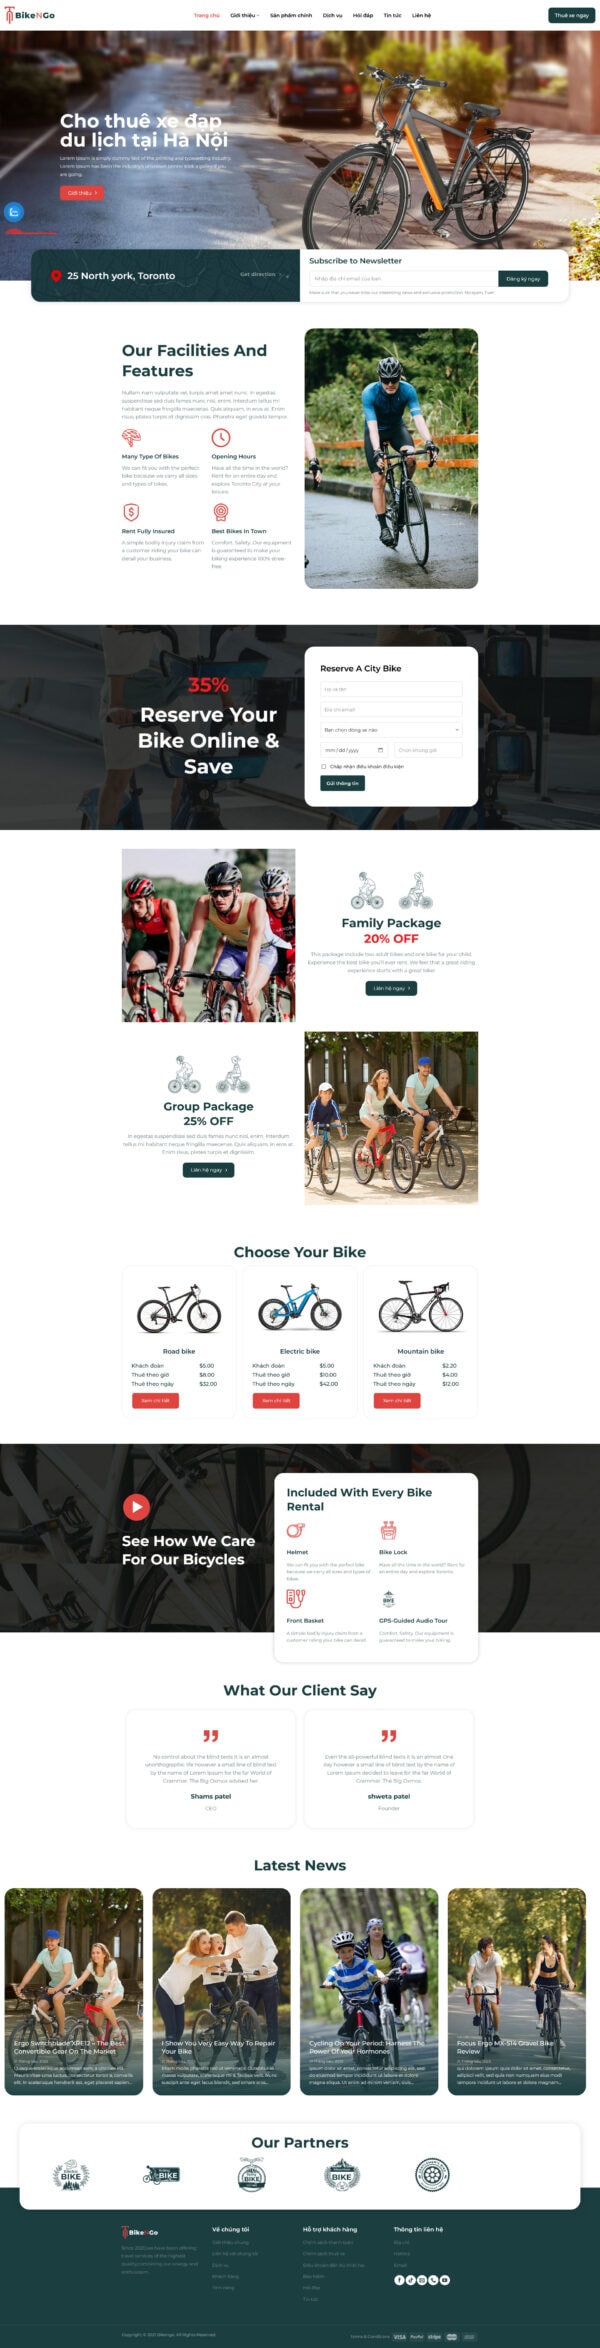 Theme wordpress dịch vụ cho thuê xe đạp